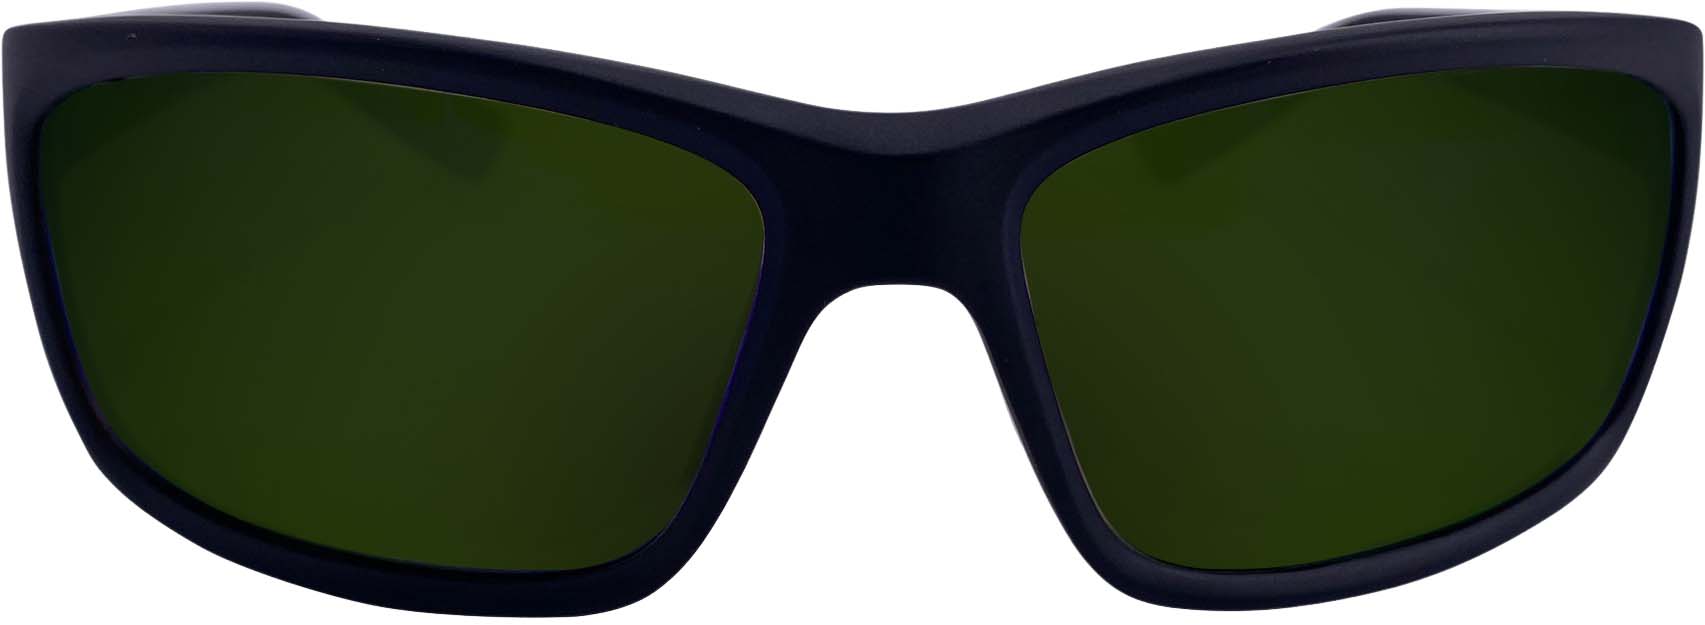 RLVNT Ranger Series Sunglasses